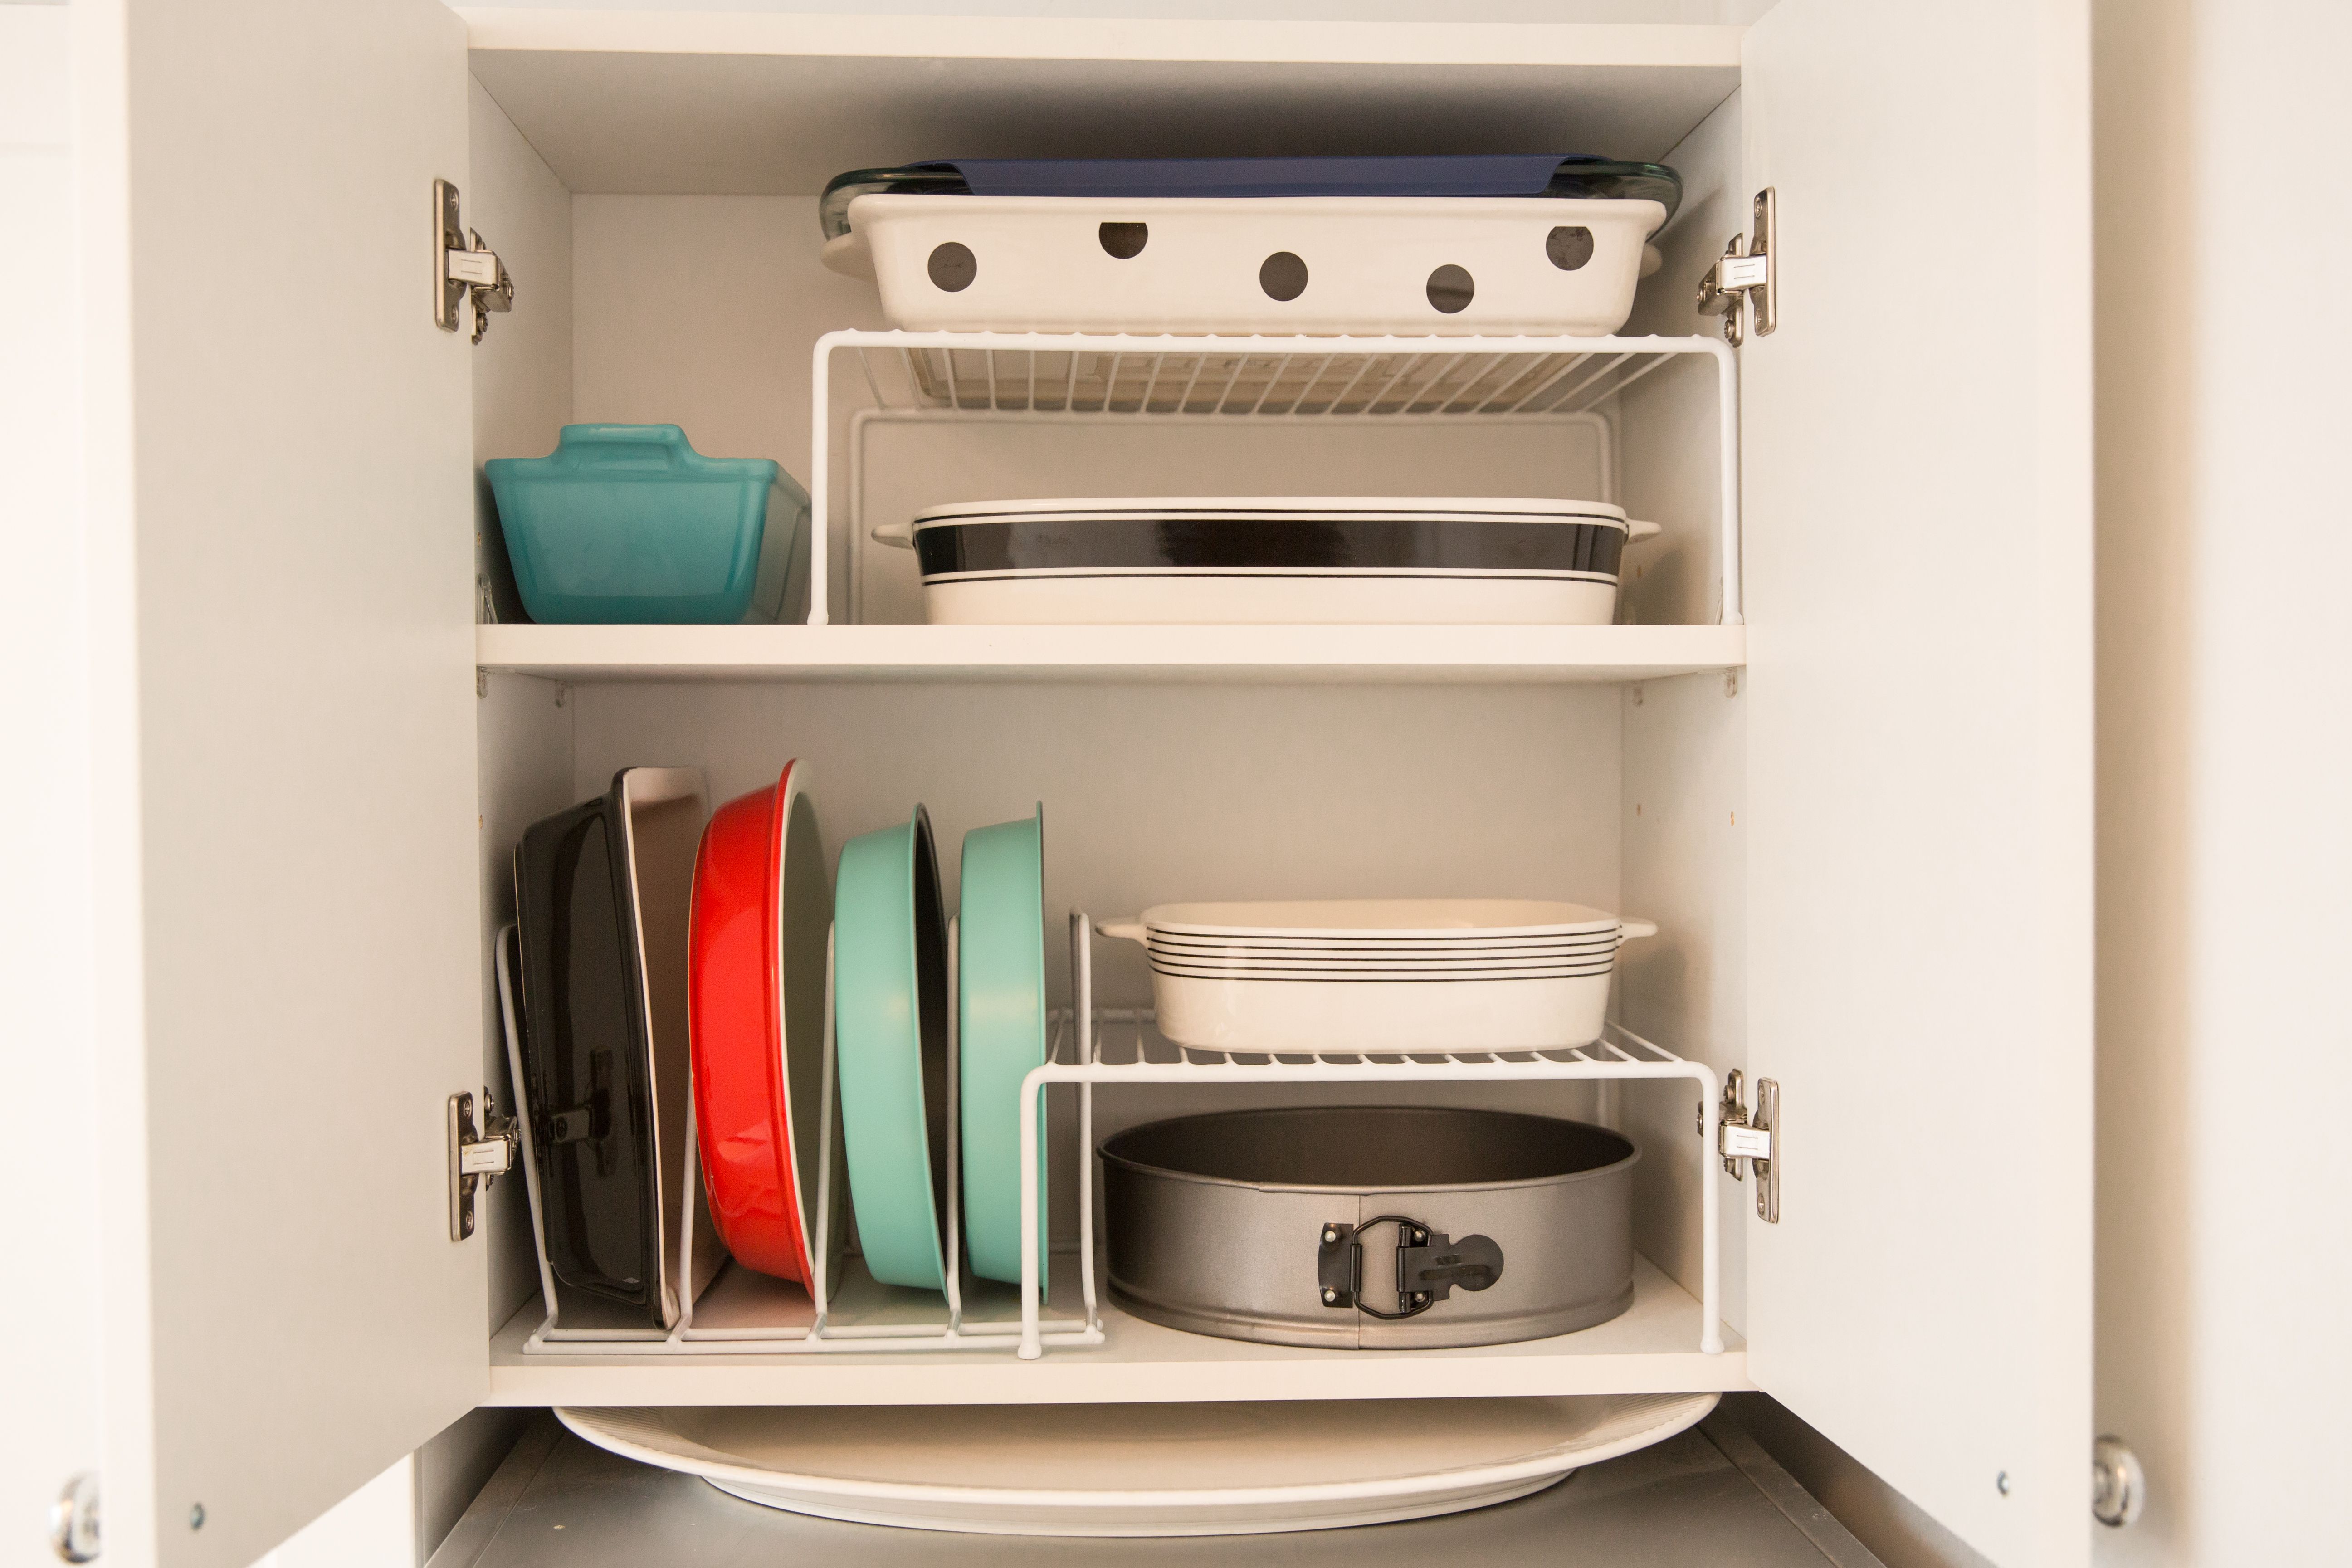 35 Best Kitchen Organization Ideas How To Organize Your Kitchen